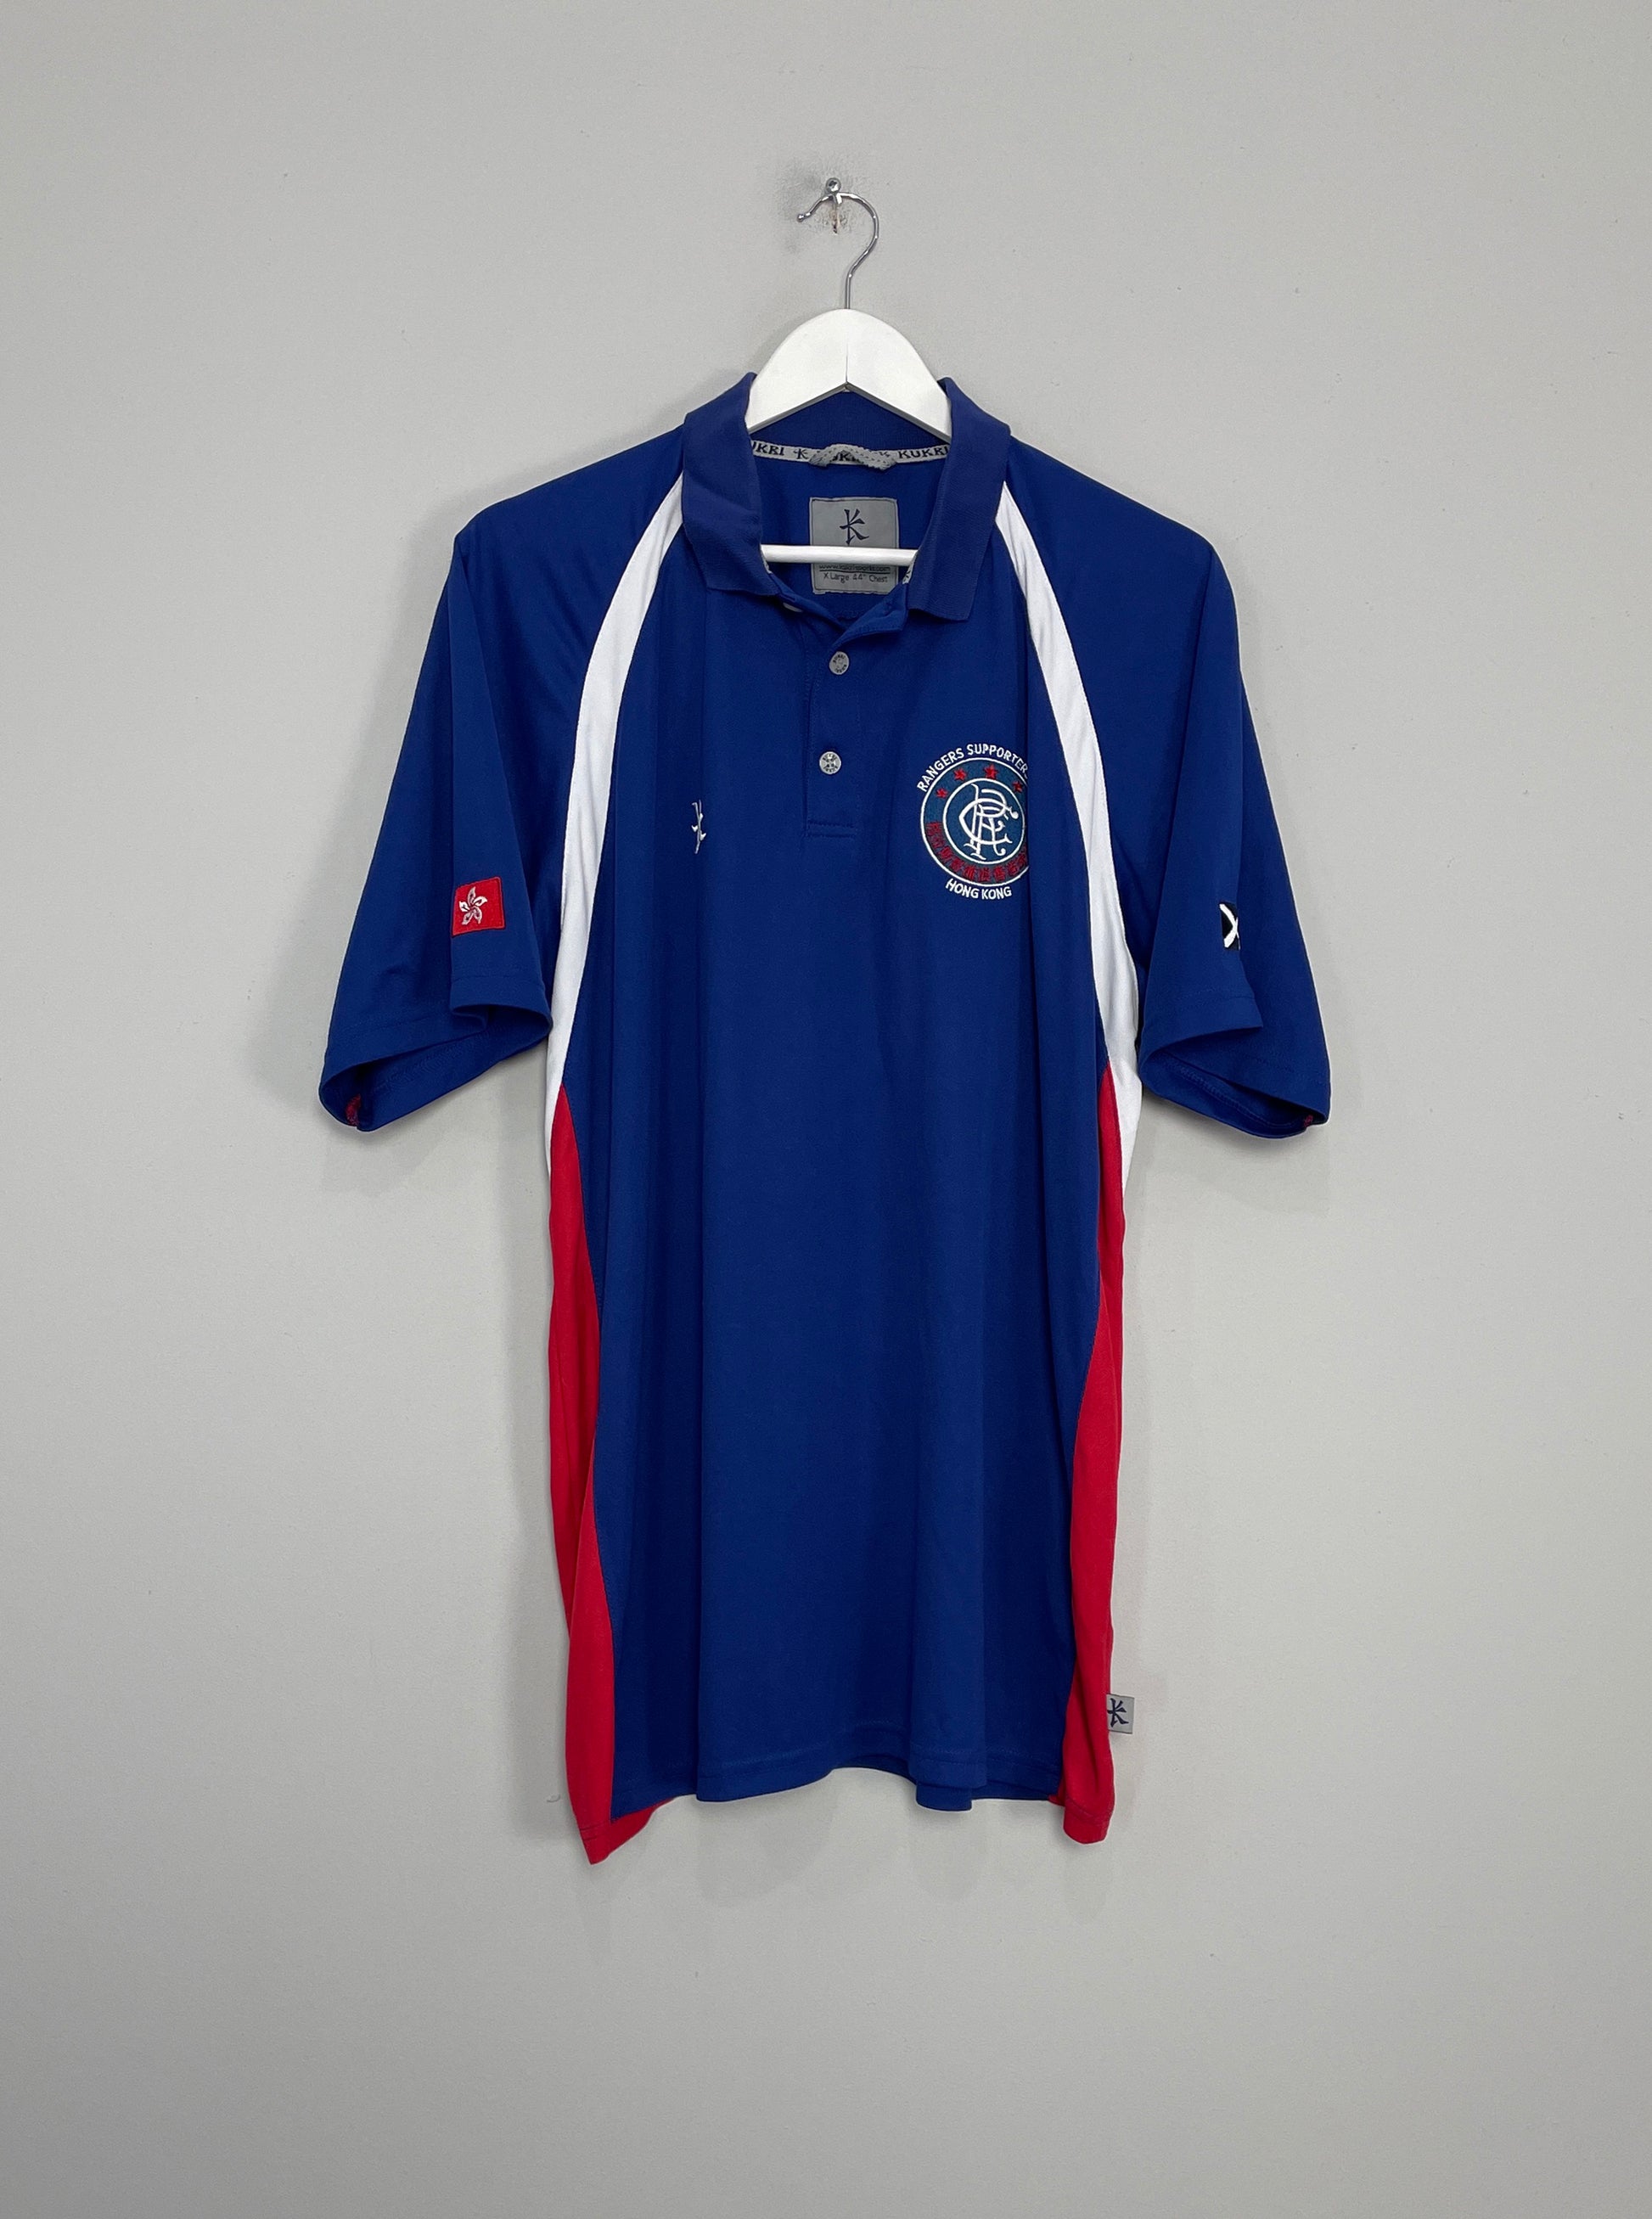 Image of the Rangers hong kong shirt from the 2010/11 season